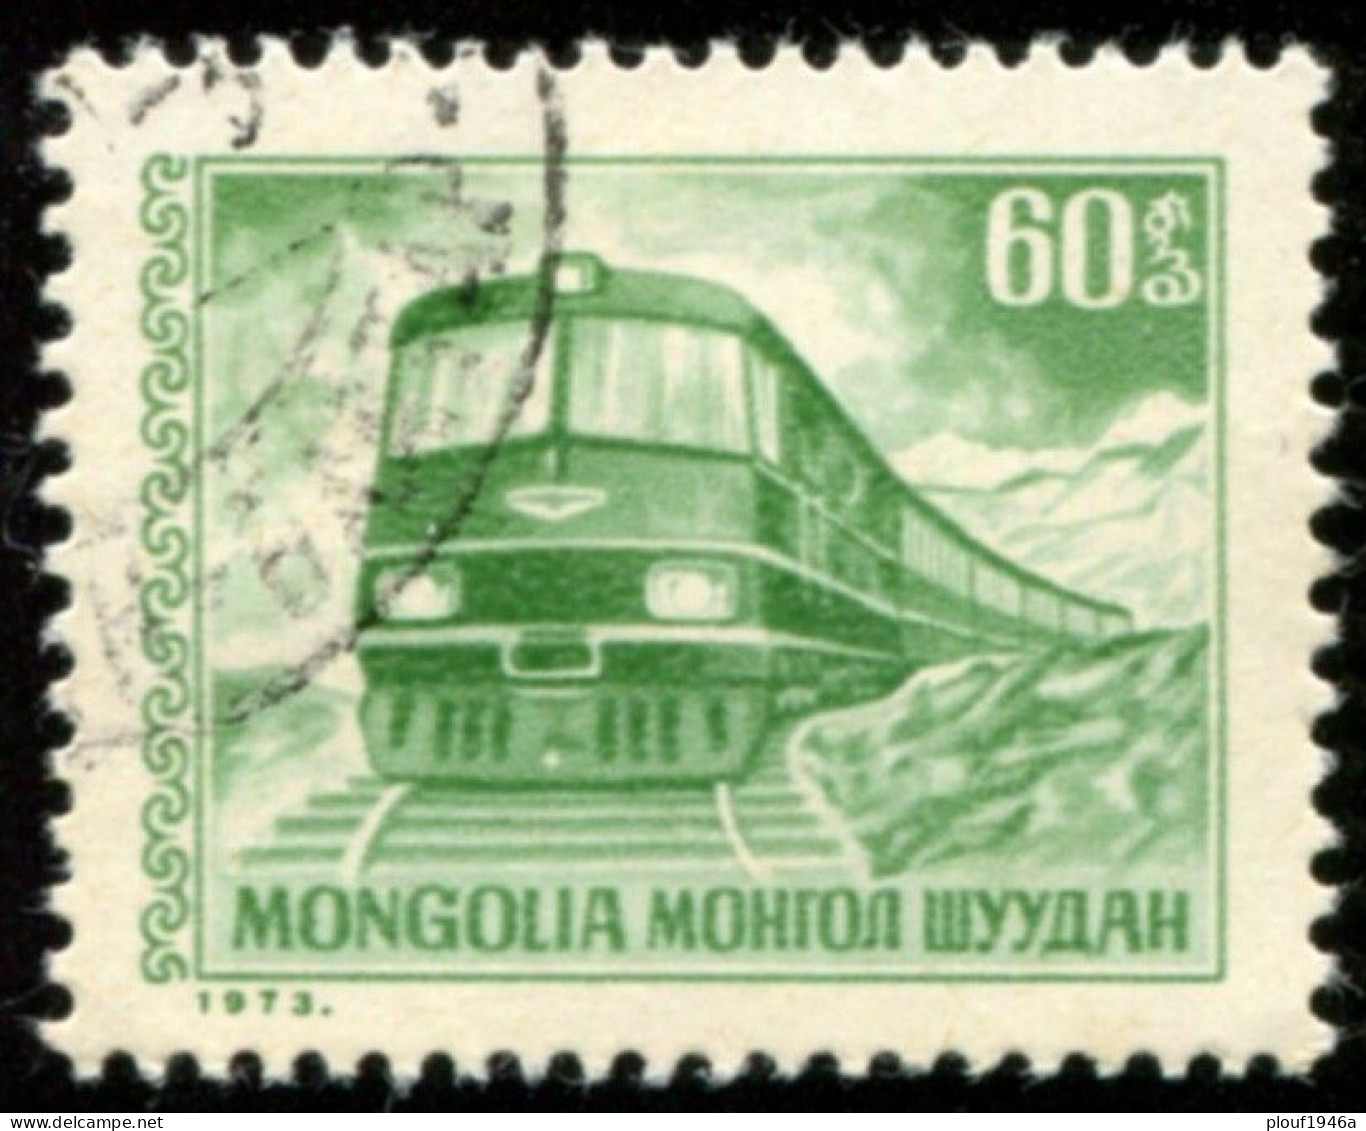 Pays : 330 (Mongolie)        Yvert Et Tellier N° :   660 (o) - Mongolia